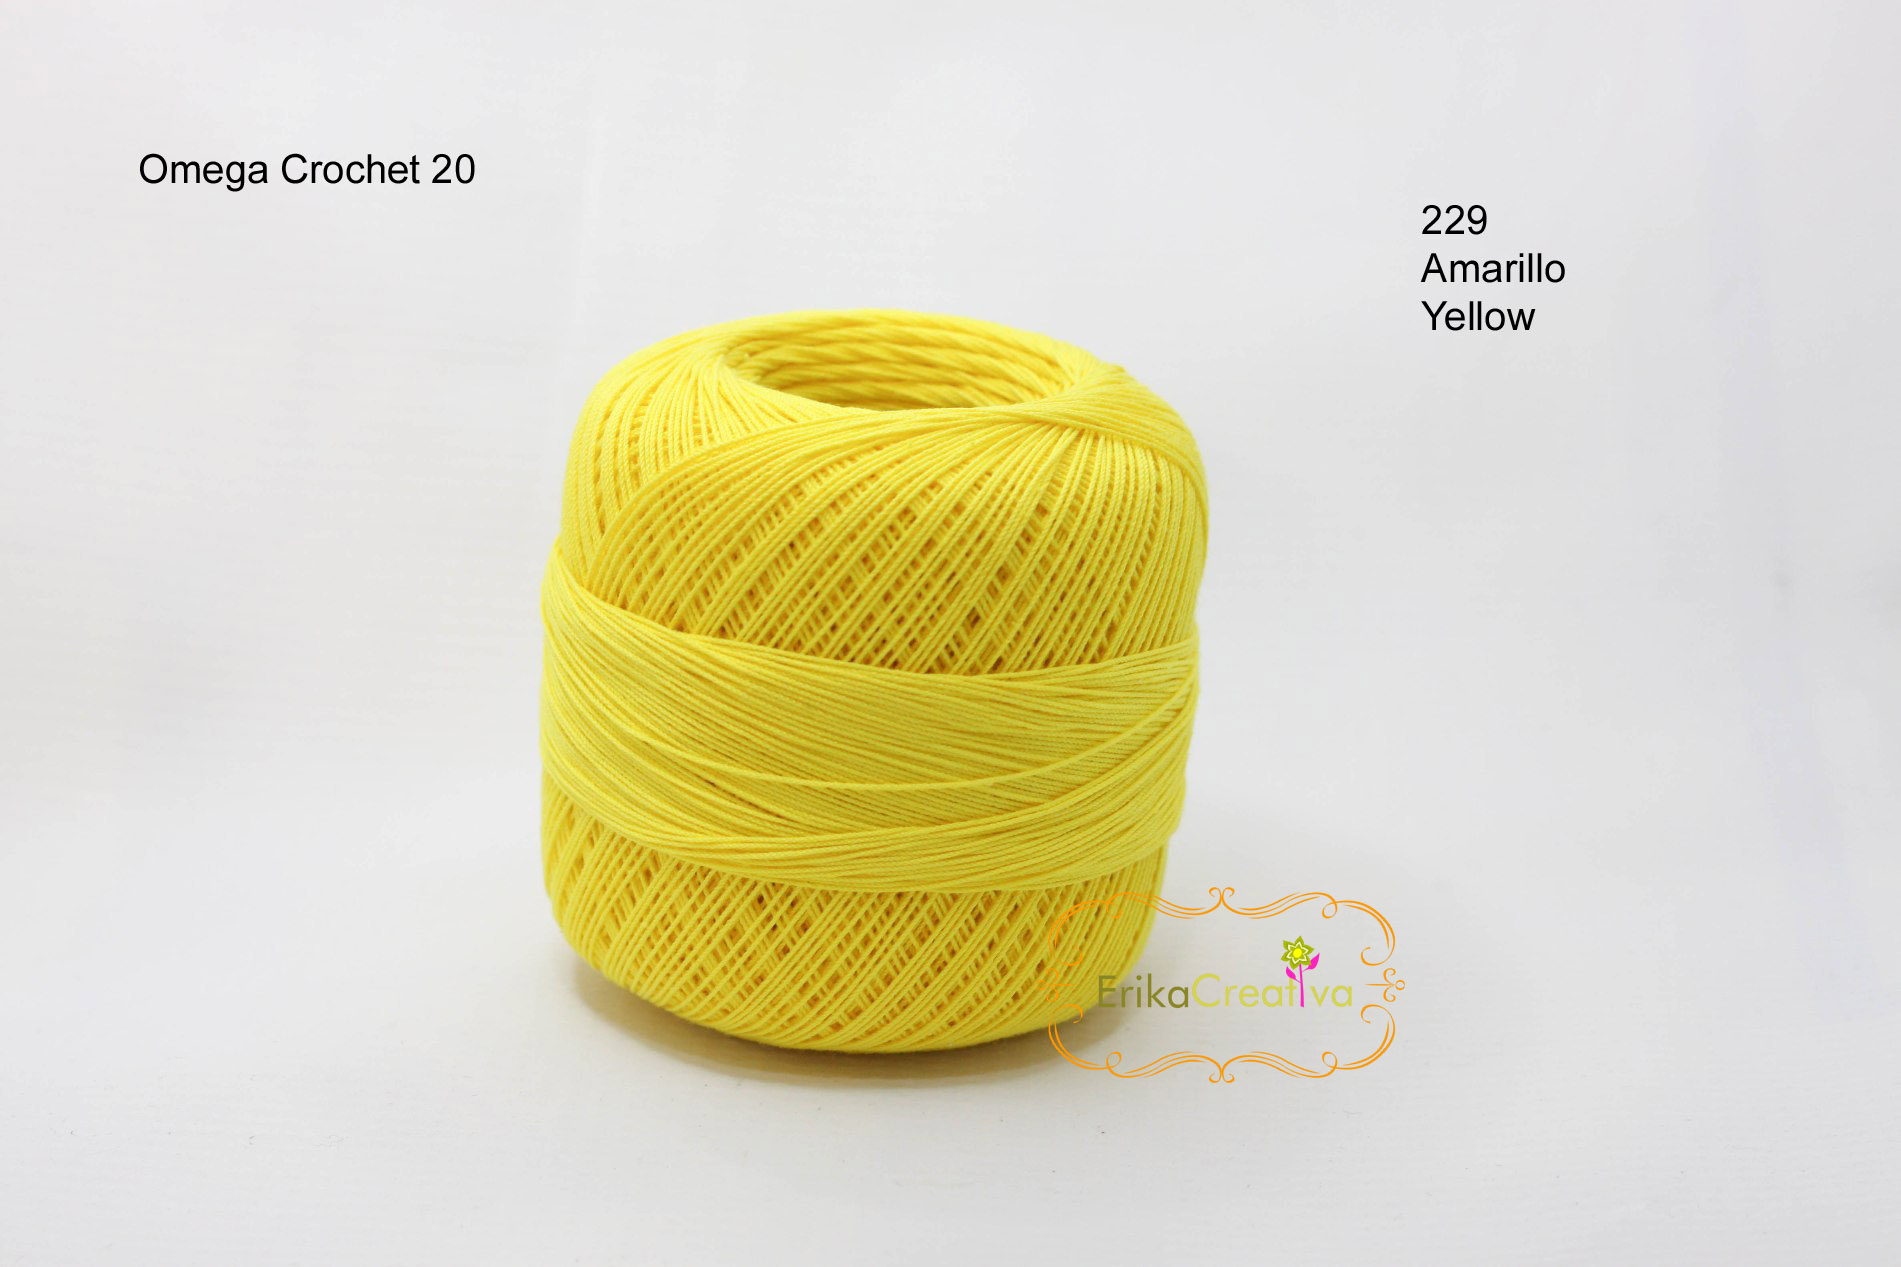 Omega Crochet 20